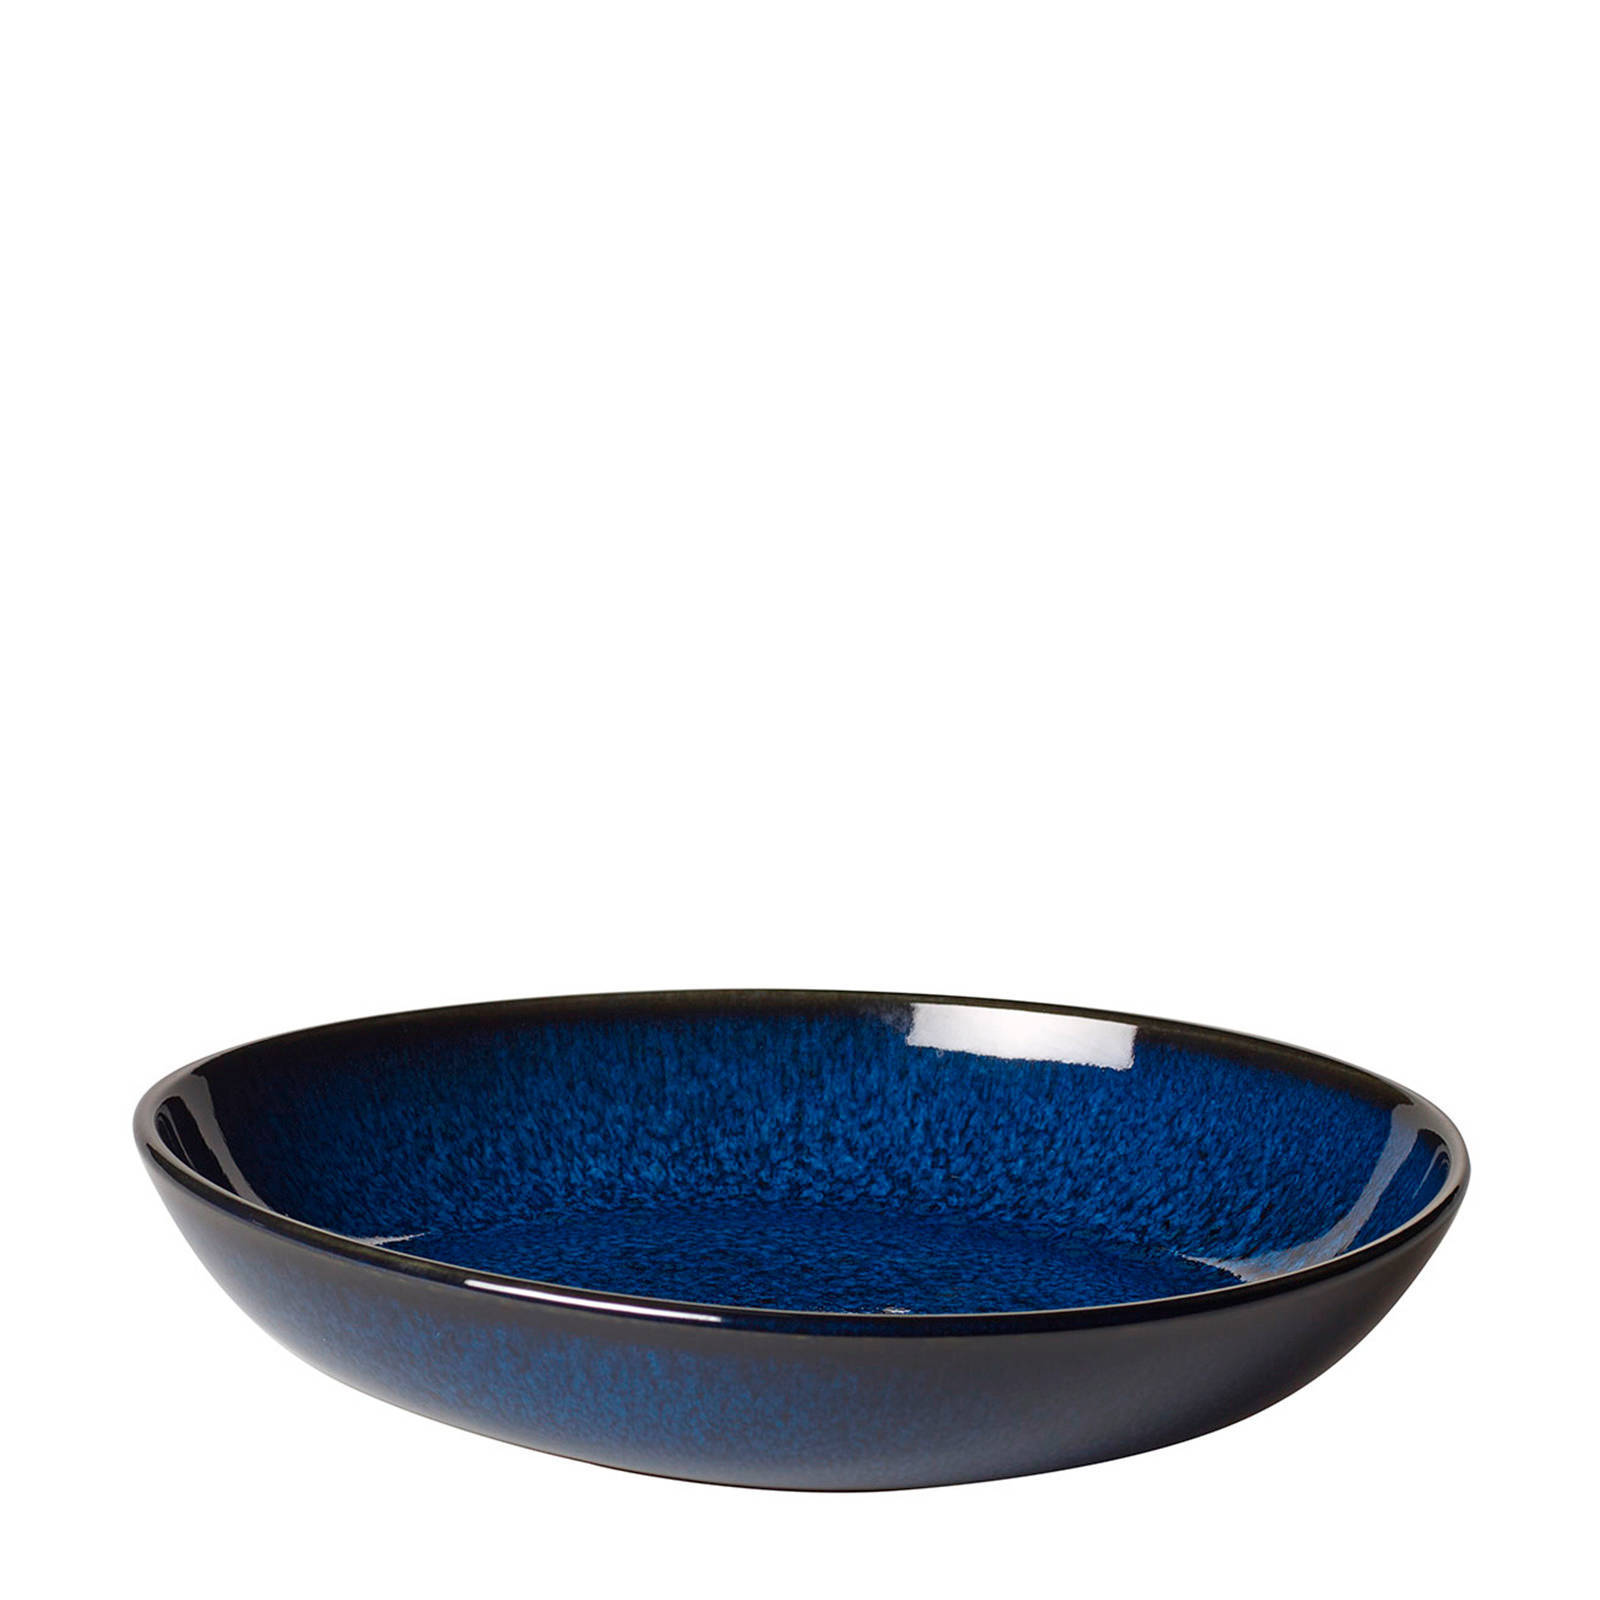 Villeroy & Boch Lave Bleu Schaal 22 cm aardewerk online kopen